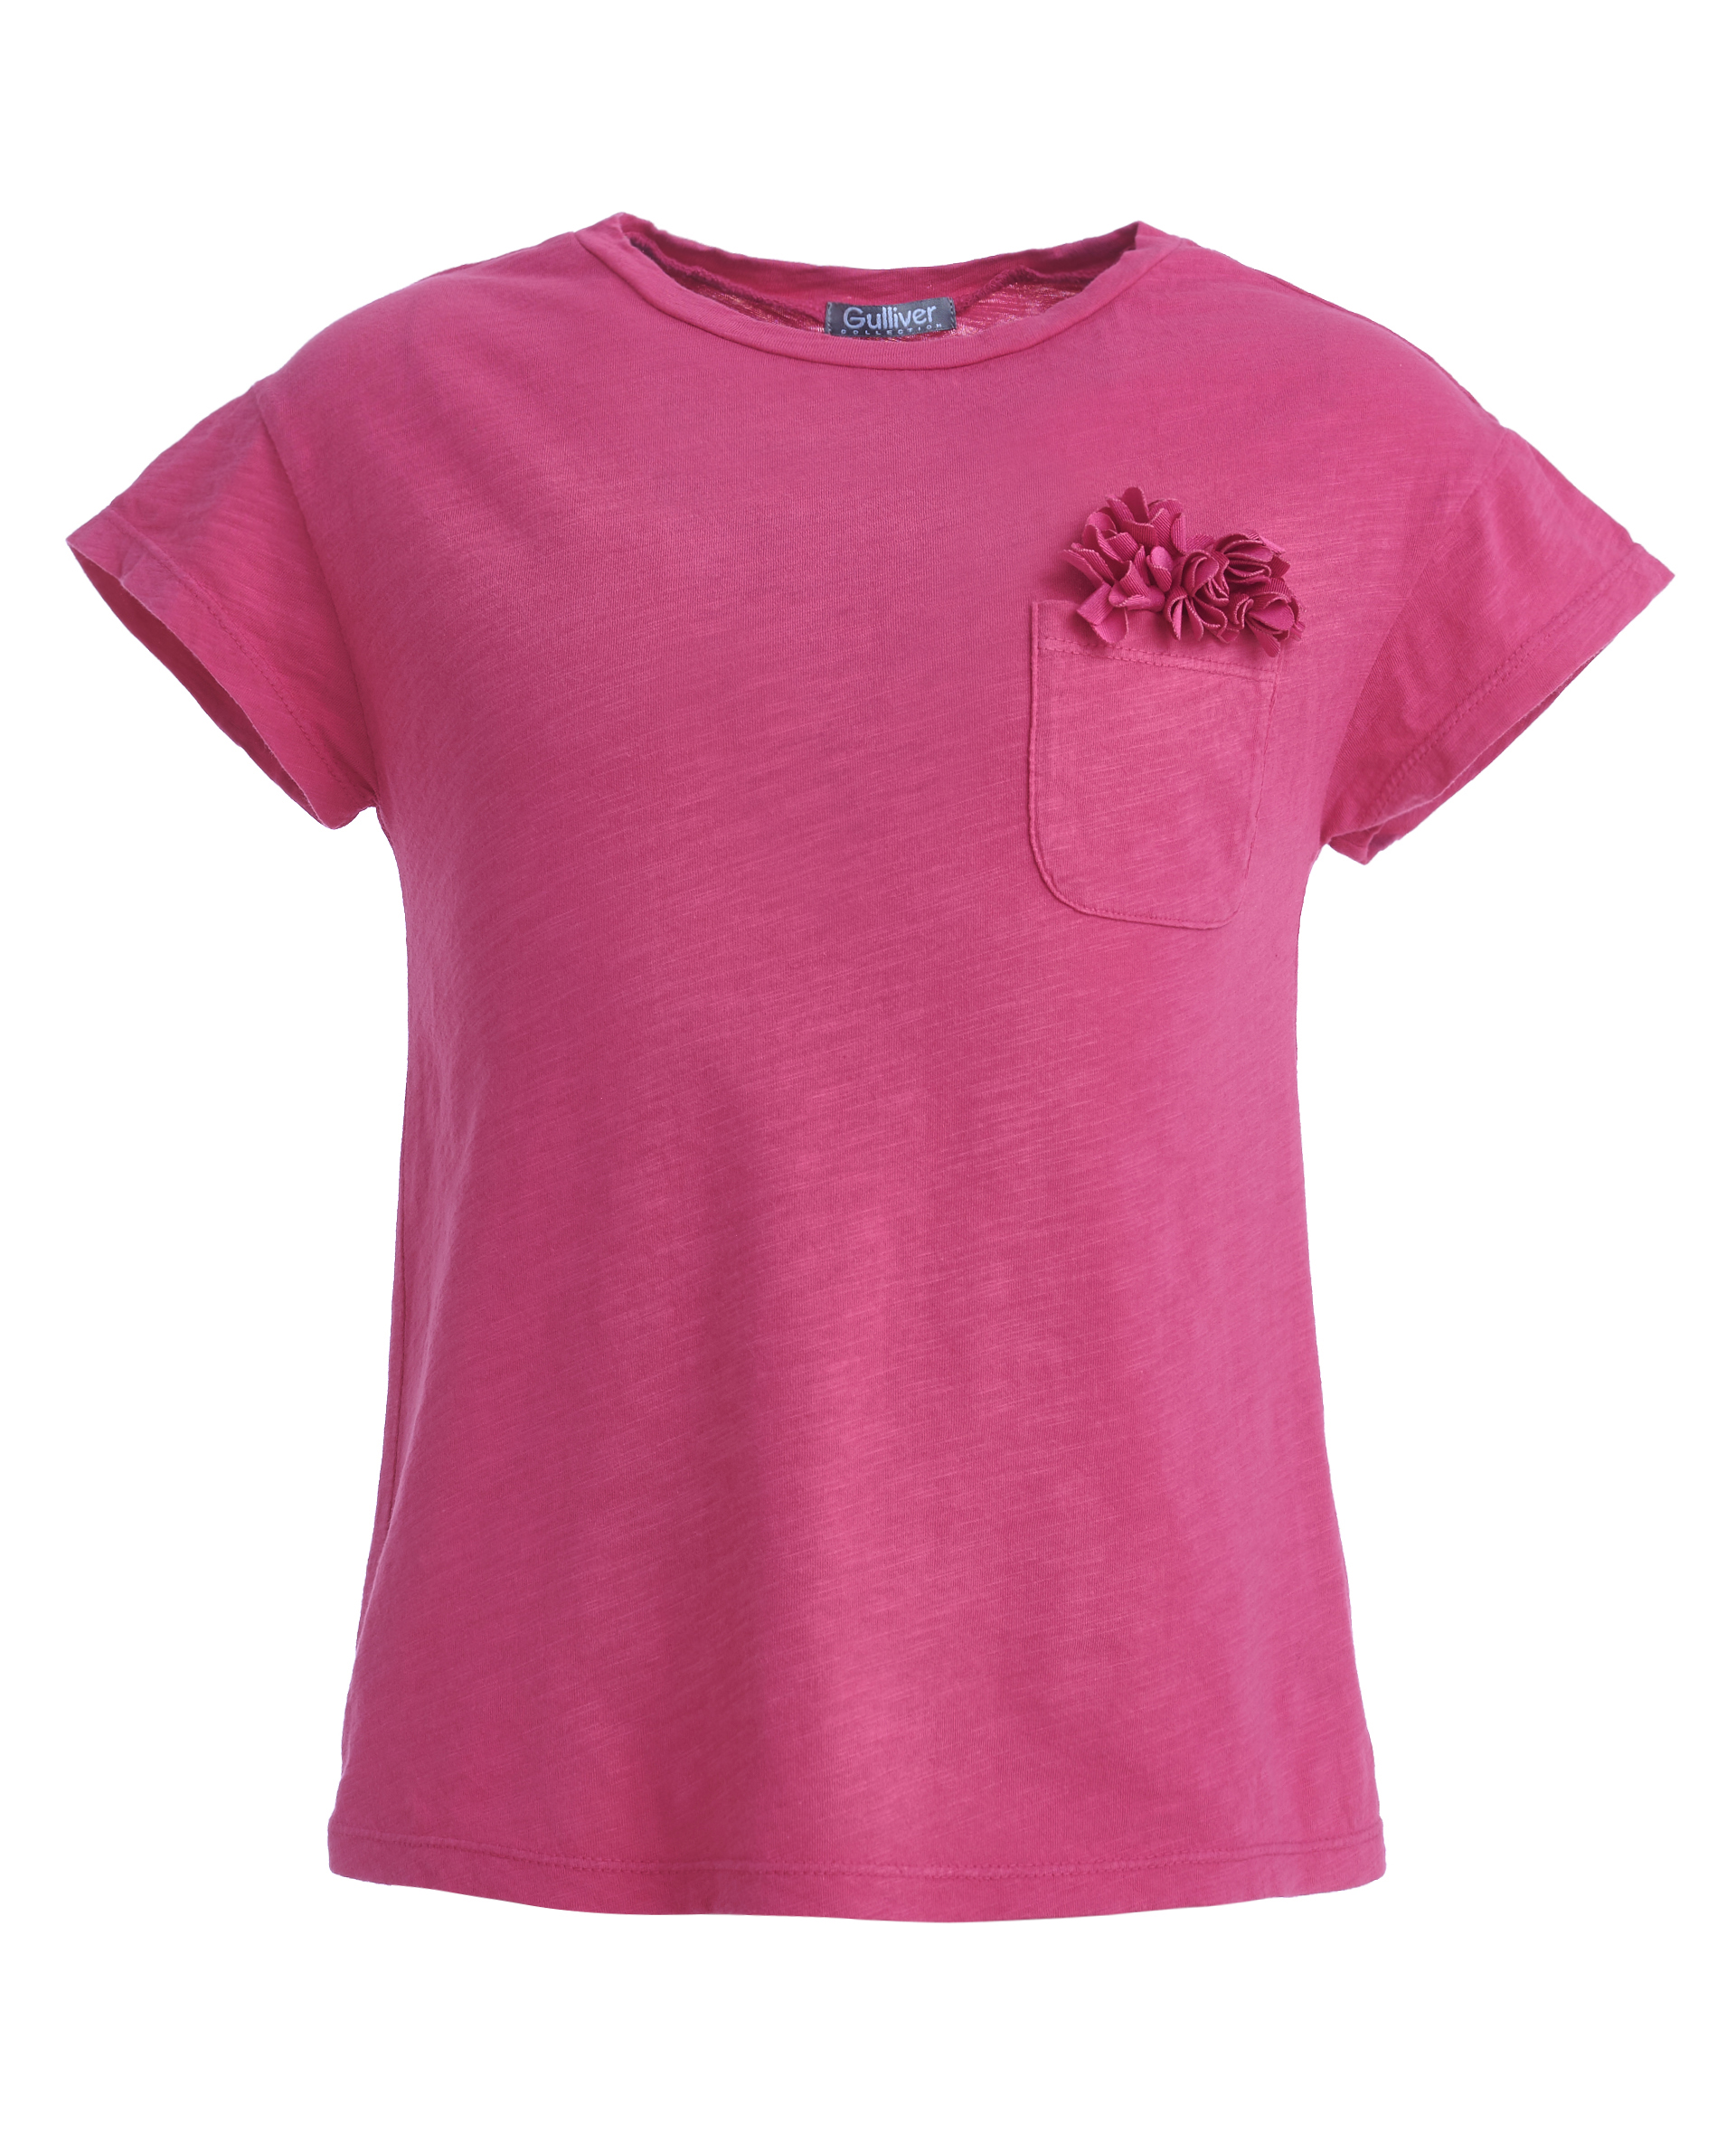 Купить 11902GMC1209, Розовая футболка, декорированная цветами Gulliver, розовый, 98, Женский, ВЕСНА/ЛЕТО 2019 (shop: GulliverMarket Gulliver Market)